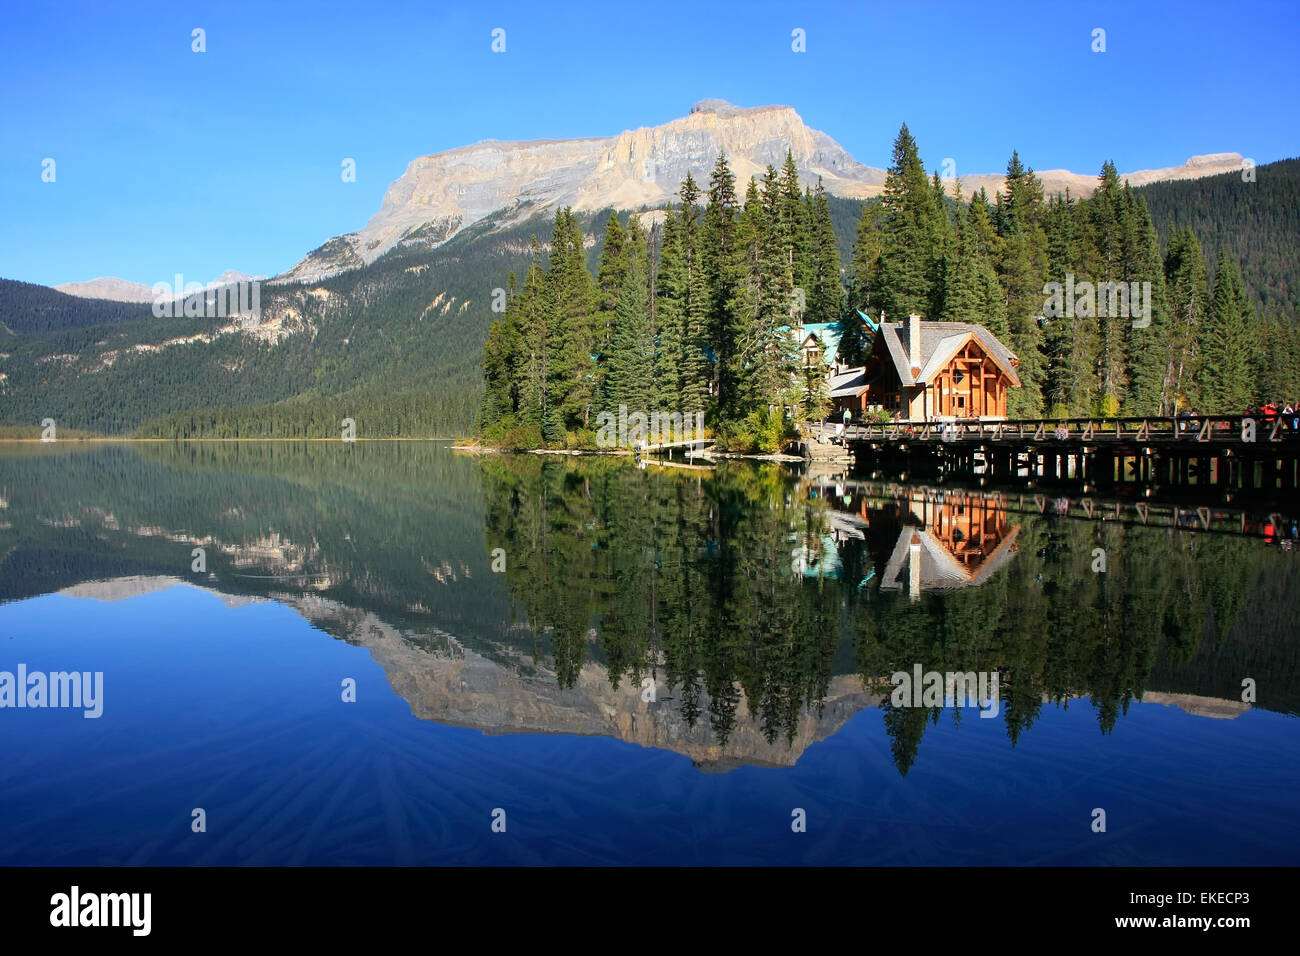 Las montañas se reflejan en el lago Esmeralda, el Parque Nacional Yoho, British Columbia, Canadá Foto de stock